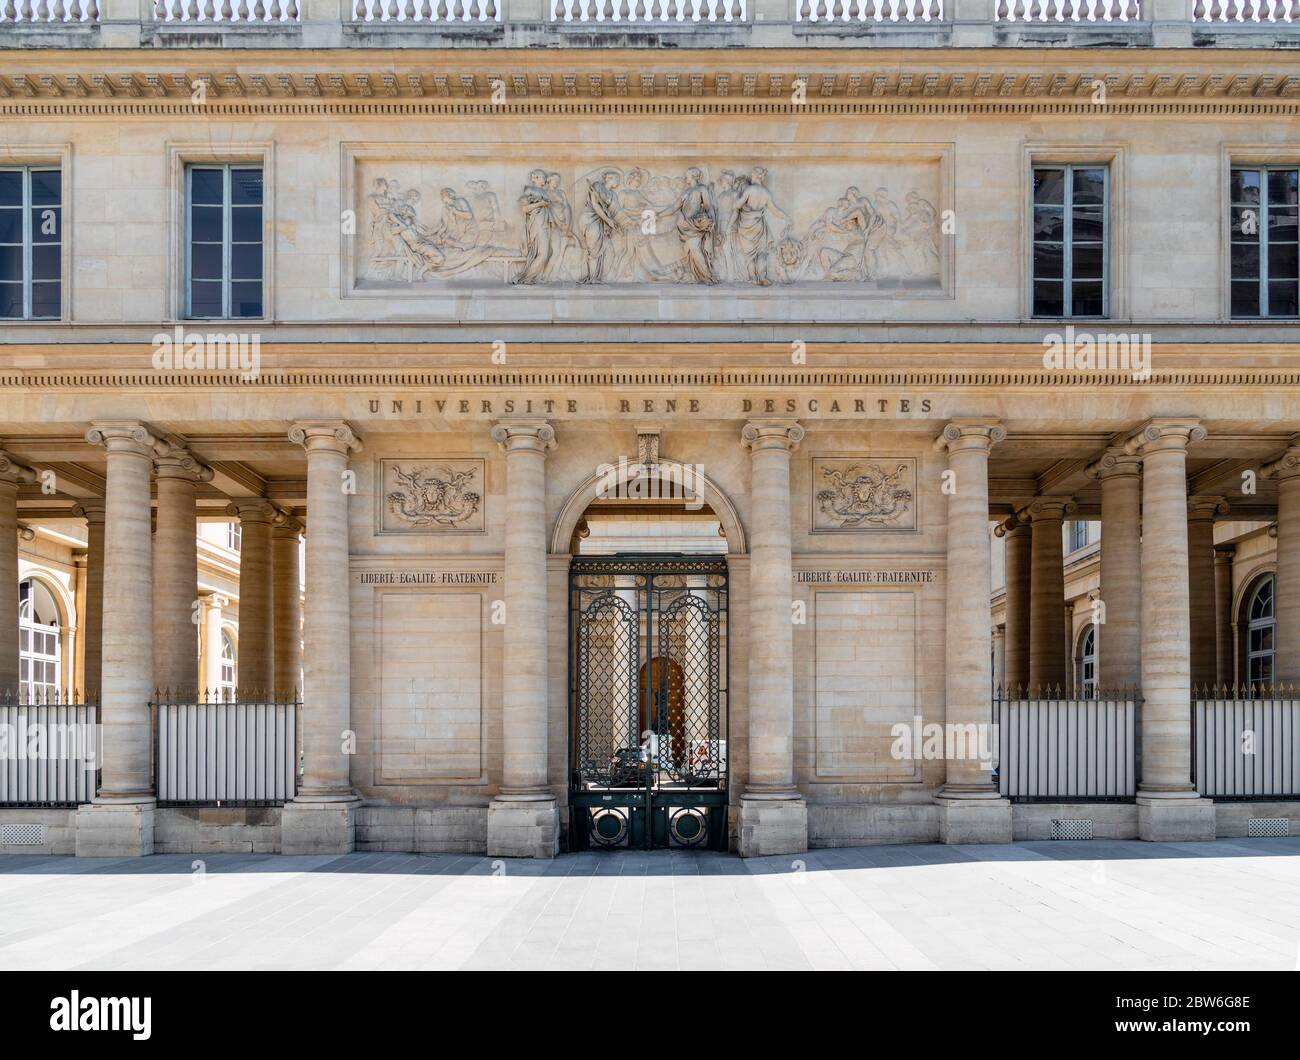 Universite Rene Descartes in Paris Stock Photo